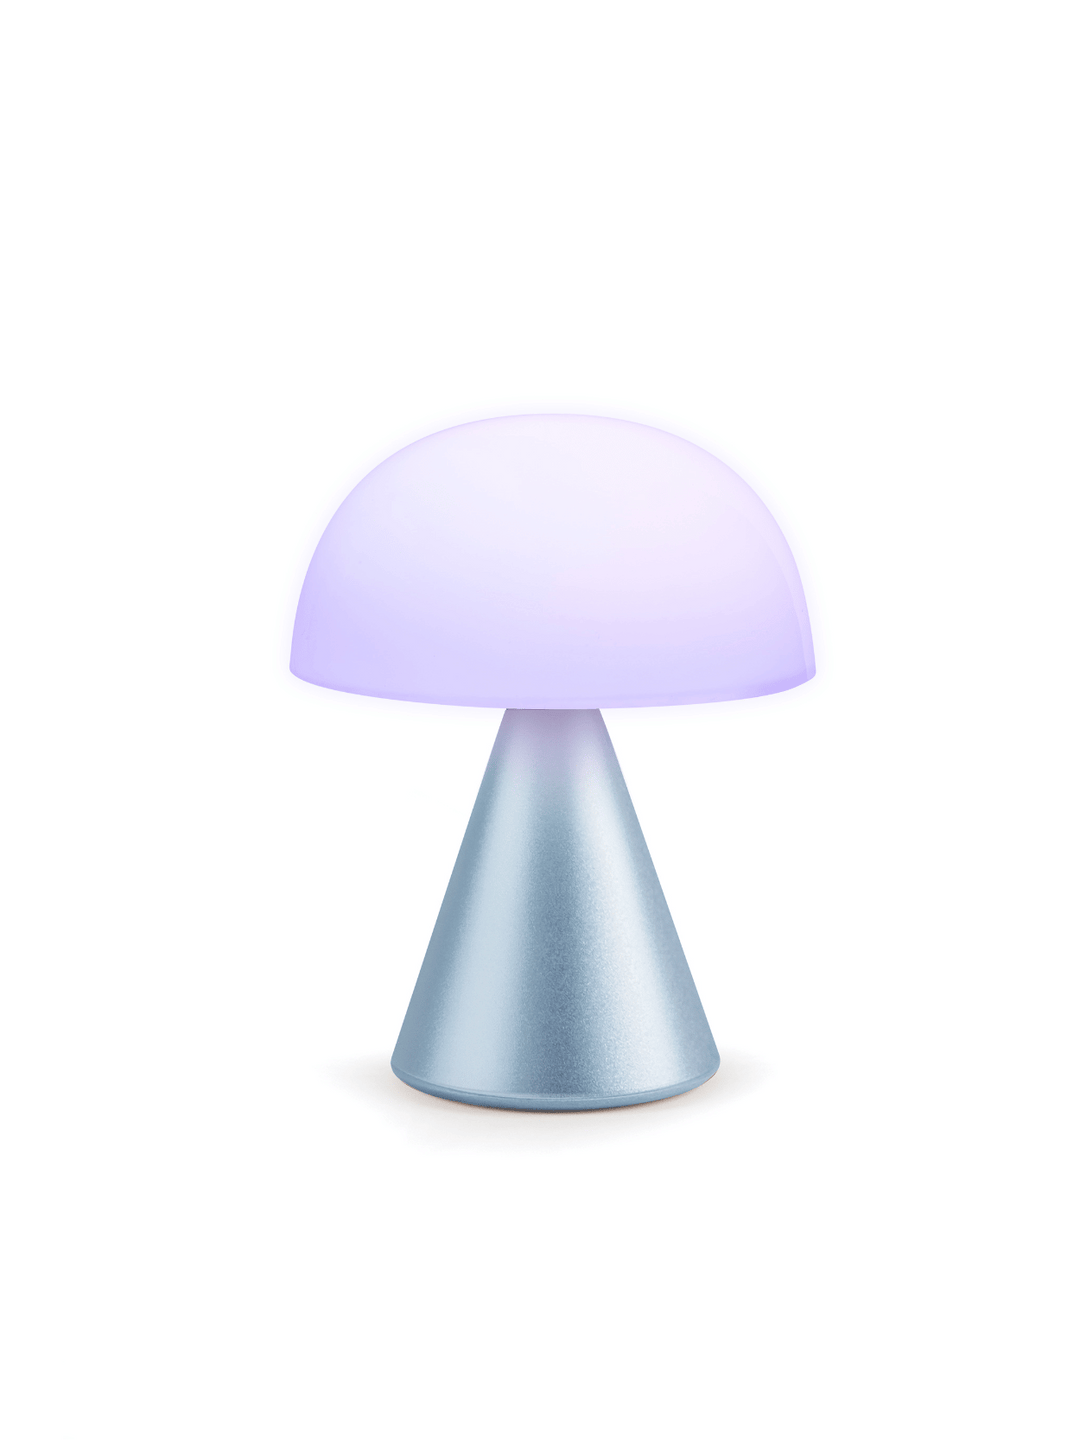 Lamp Mushroom Large